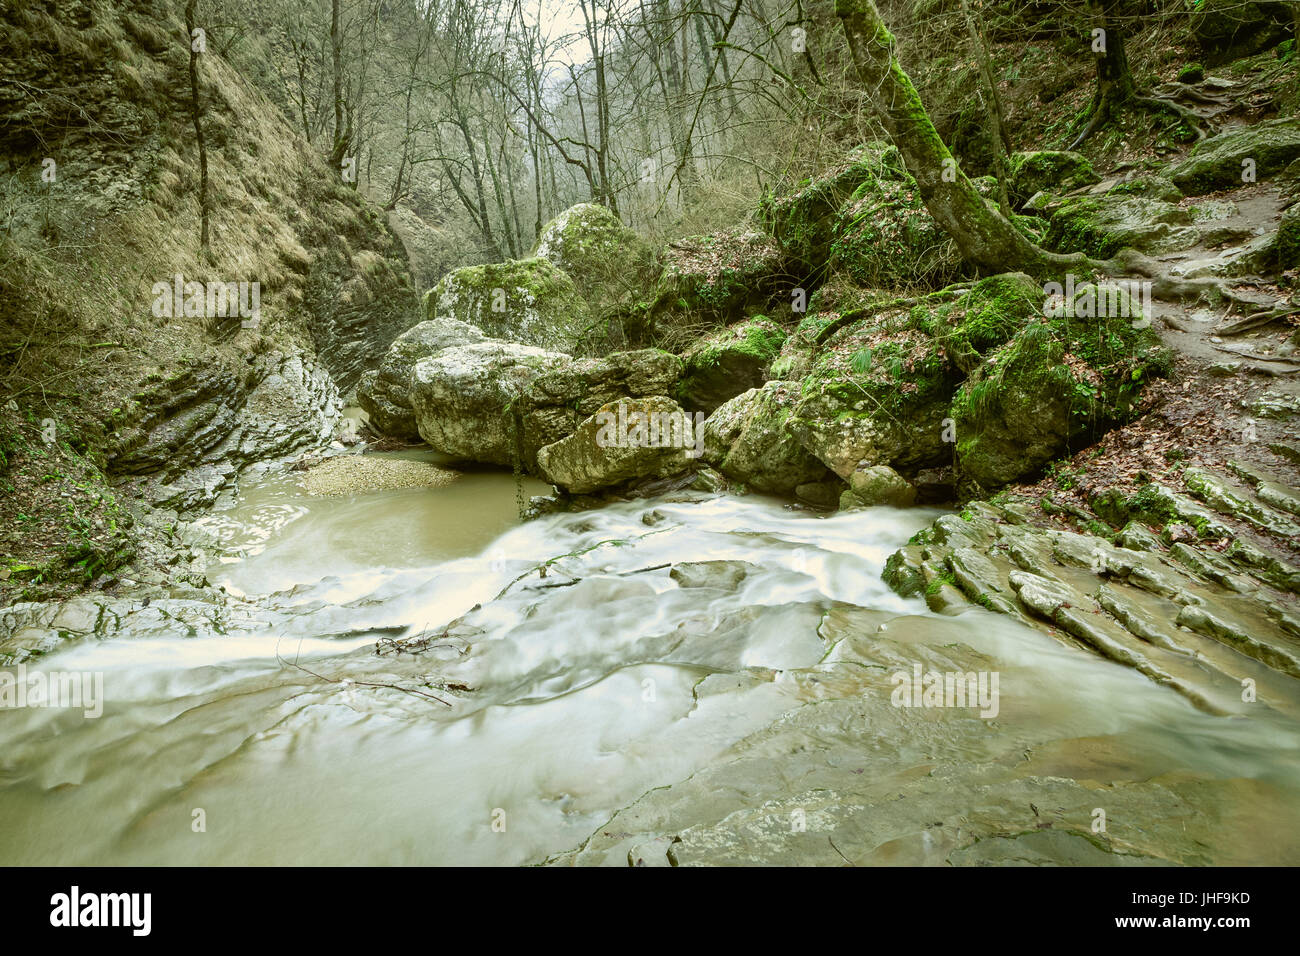 Landschaft der steinernen Treppe erstellt von grünem Moos Wald, Natur und Fluss Wasserfall. Stockfoto